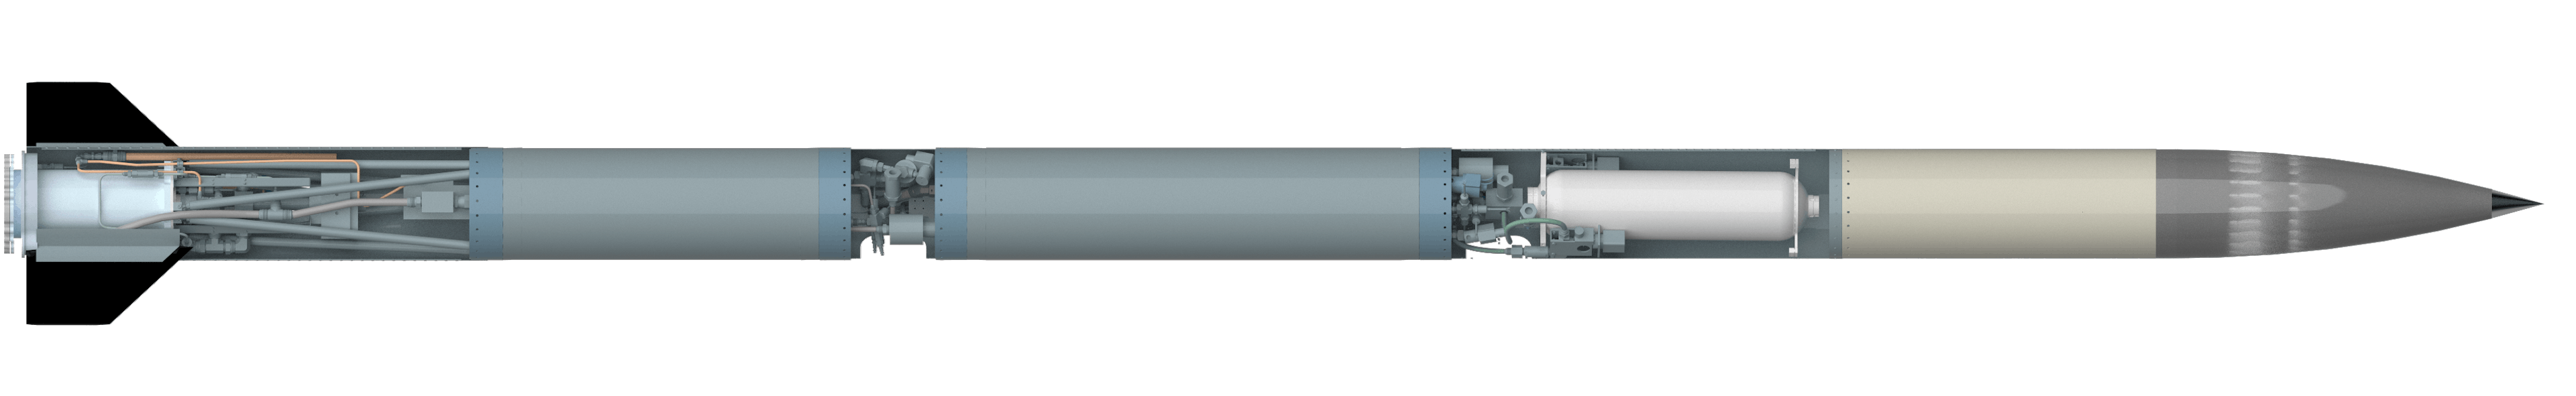 クレメンタインはMASAの最新の超音速観測ロケットです